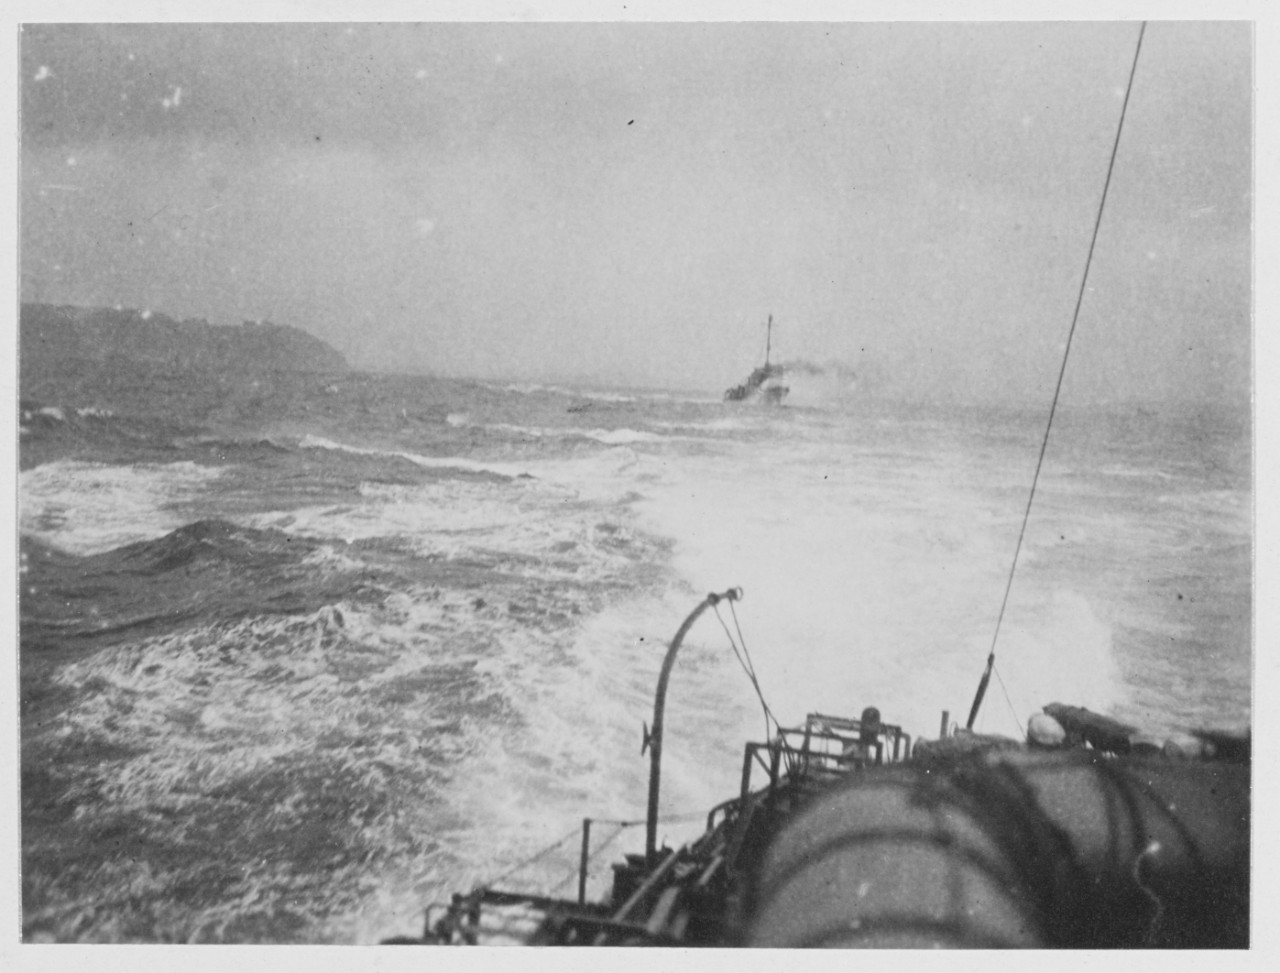 U.S. Destroyers entering Brest harbor, France during World War I